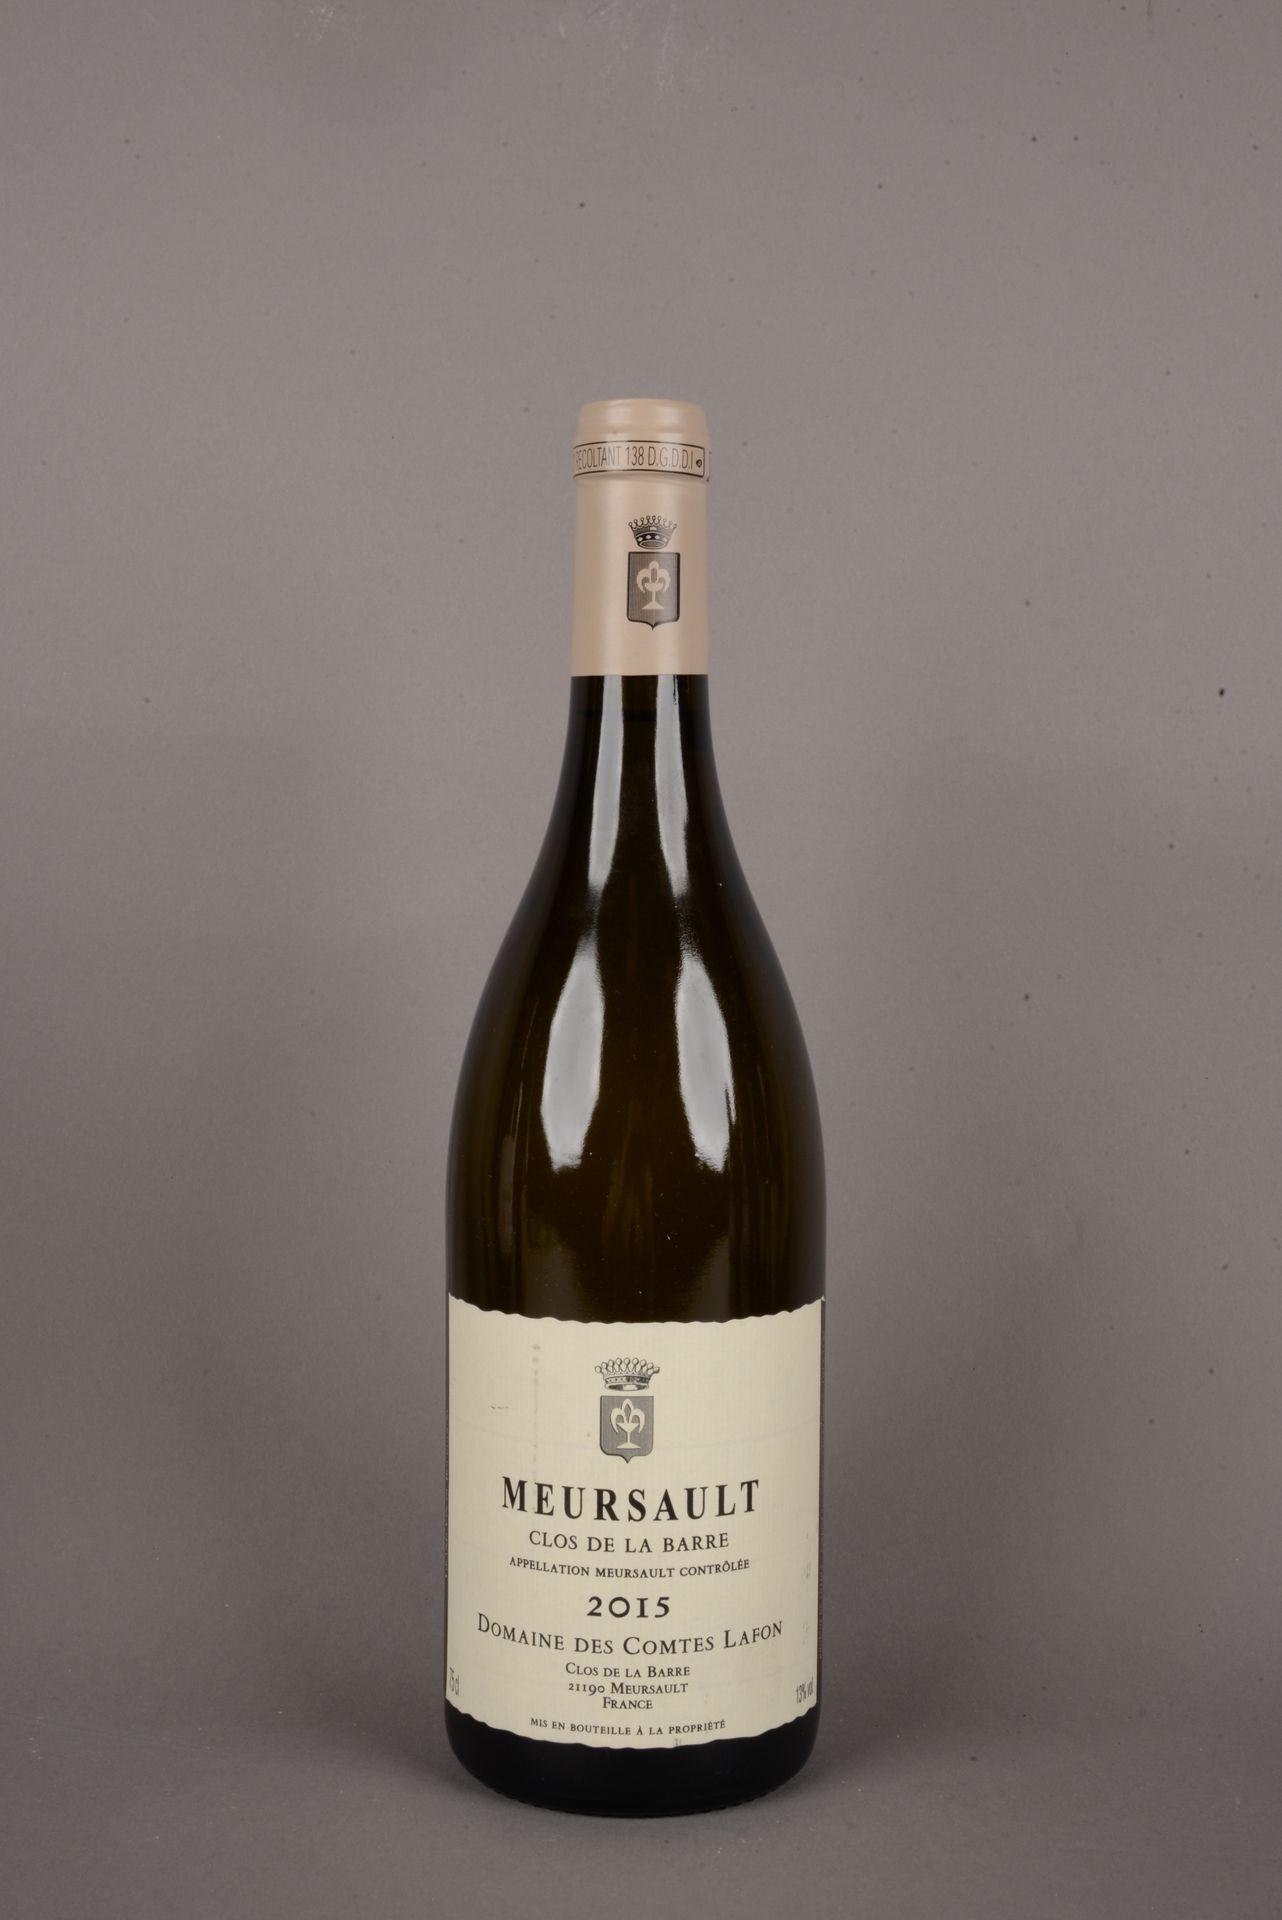 Null 1 Bottle MEURSAULT Clos de la barre, Domaine des Comtes LAFON, 2015.